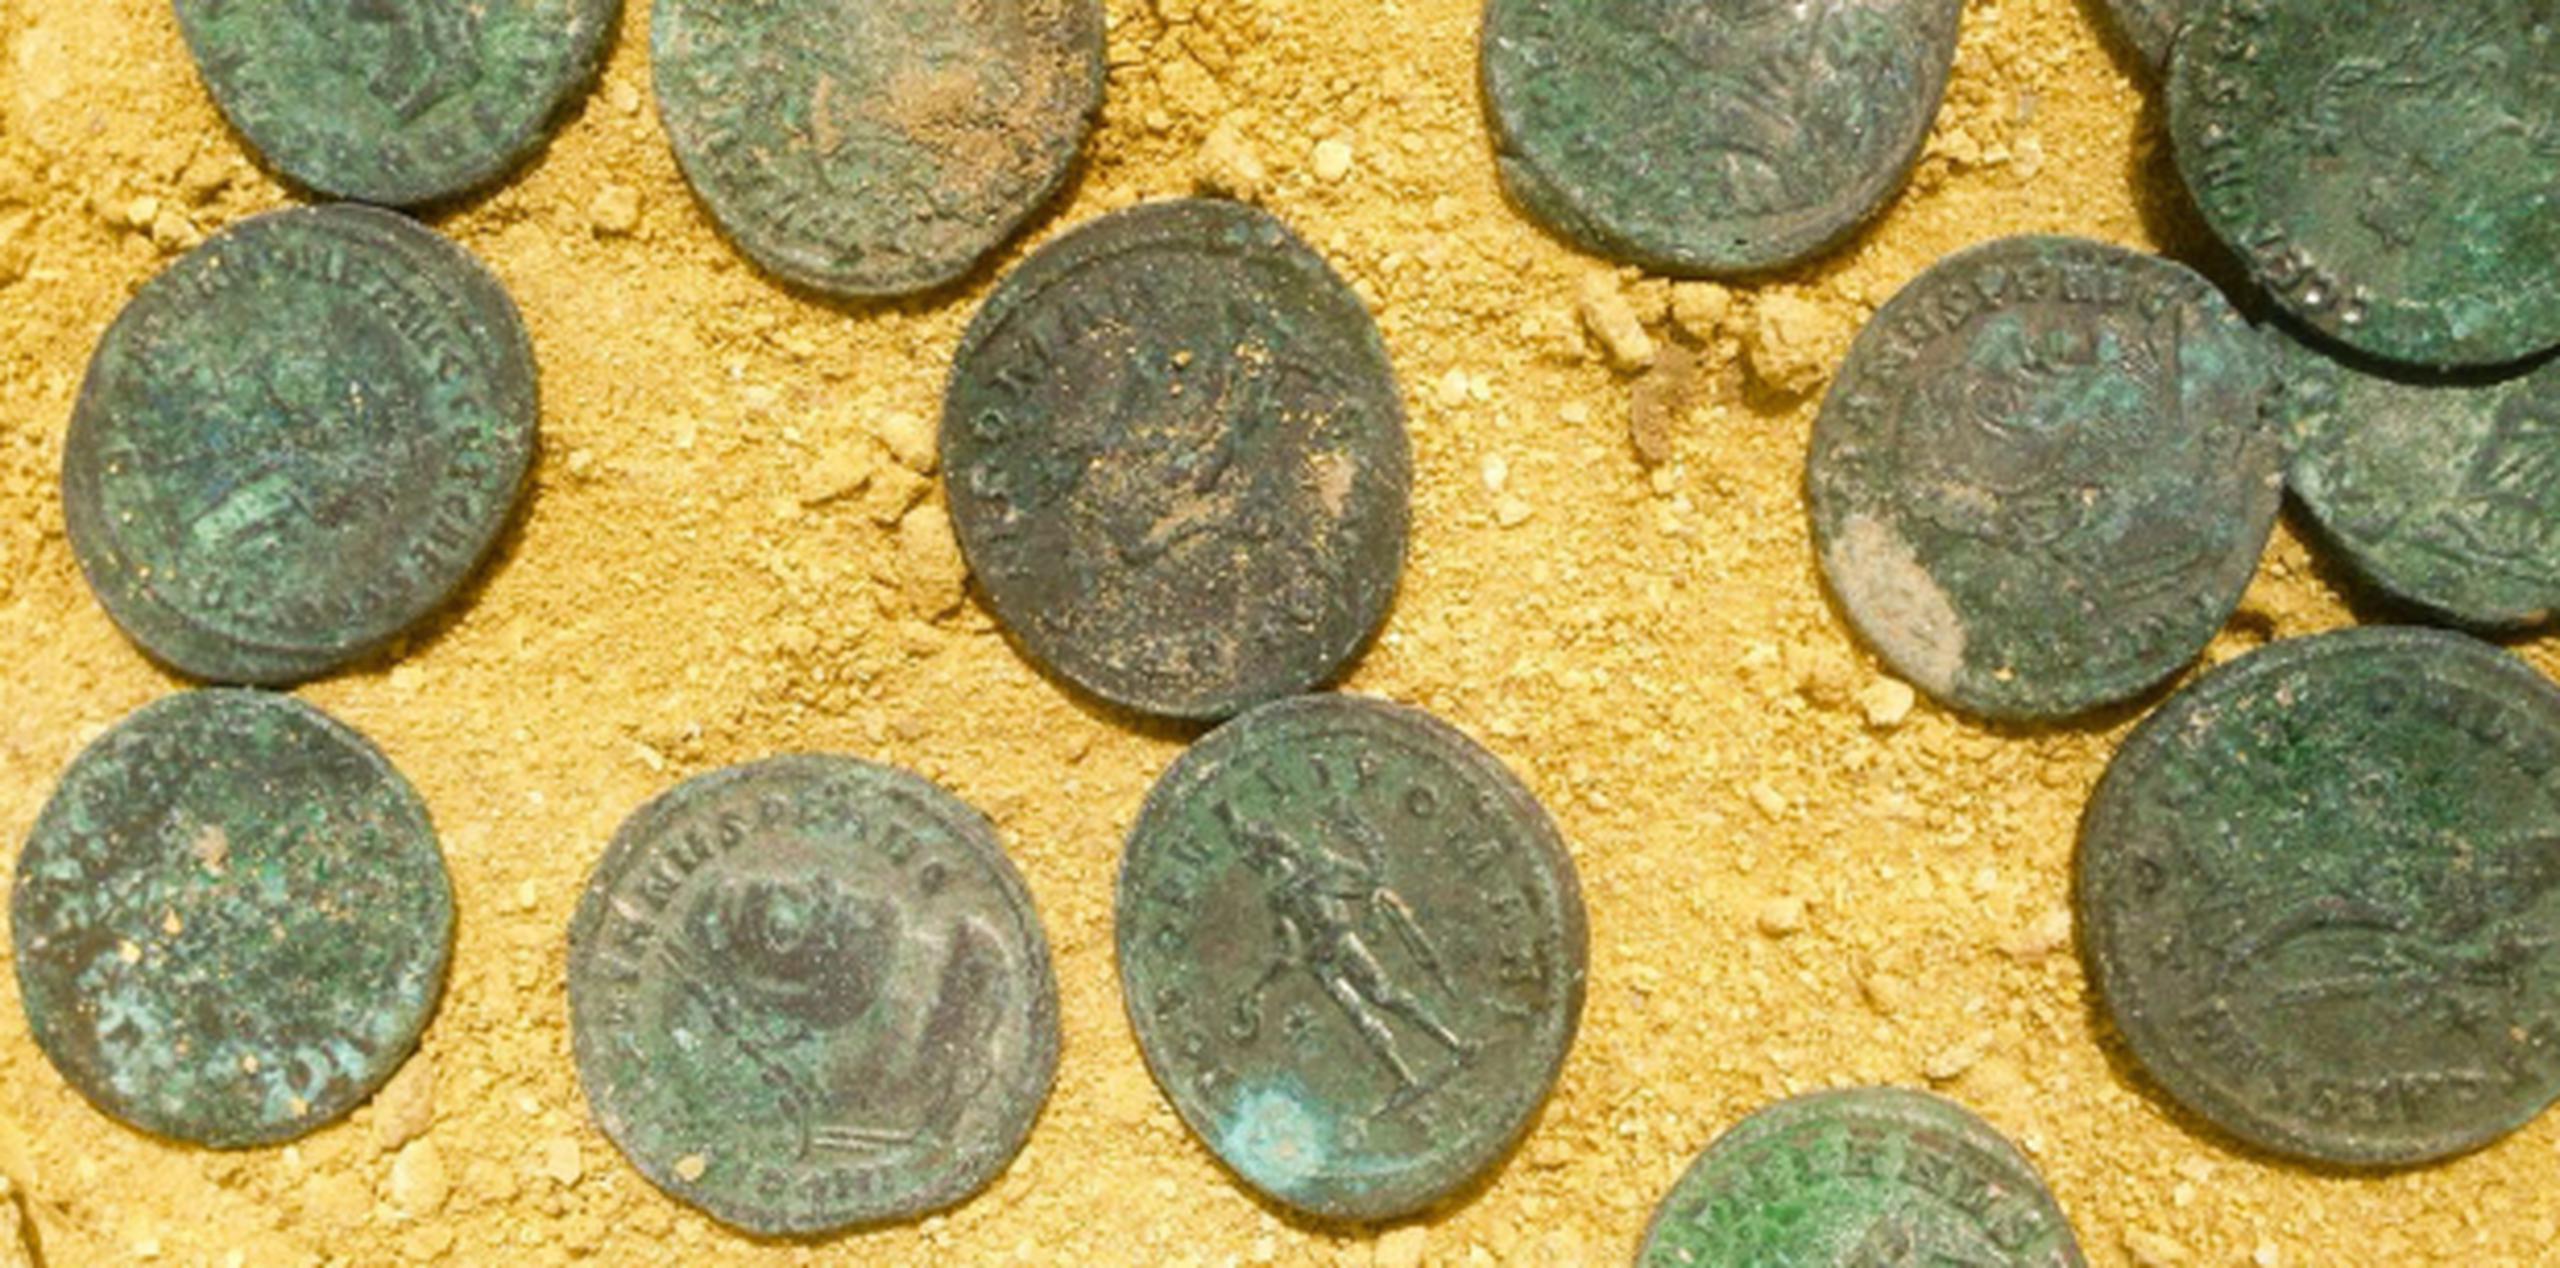 Se cree que las monedas estaban recién acuñadas y probablemente estarían guardadas para pagar a soldados o funcionarios de la época. (City Council of Tomares via AP)